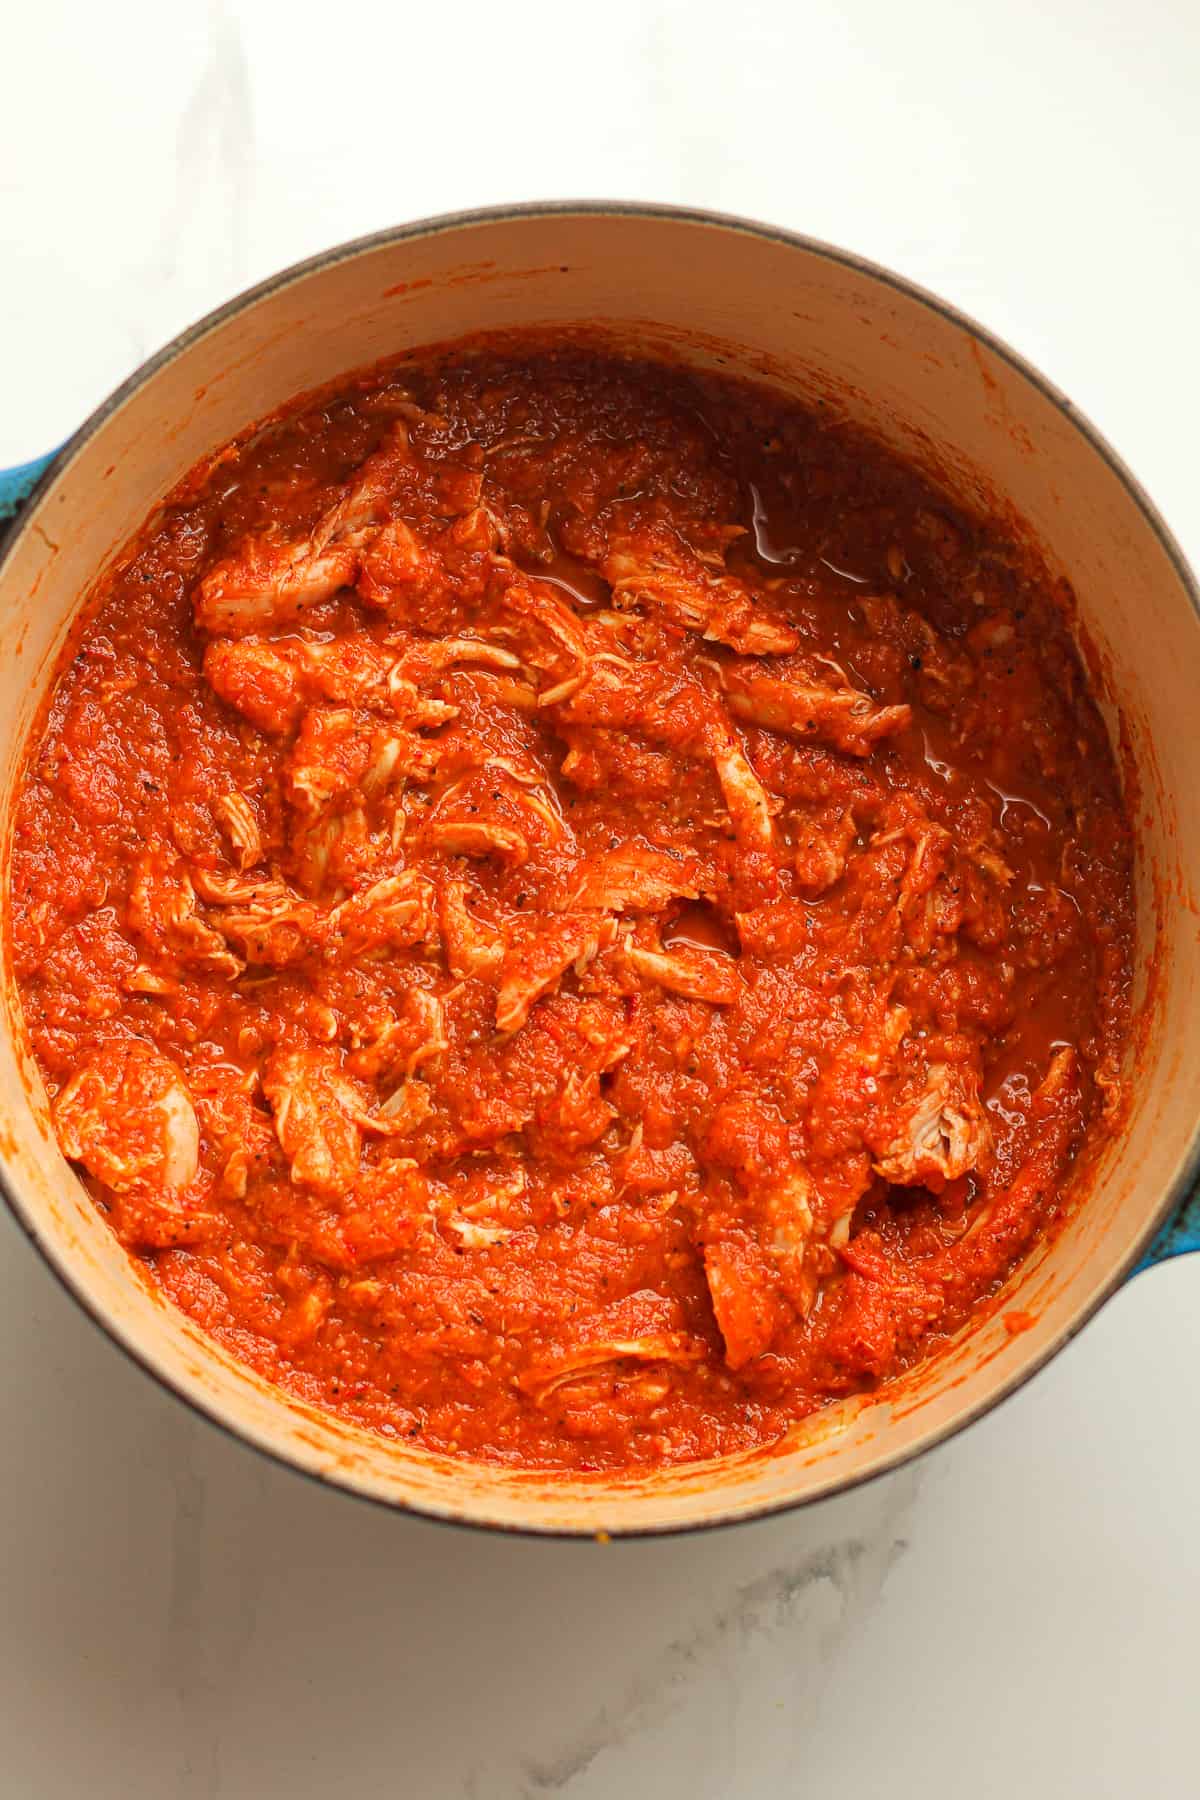 A stock pot of chicken Tinga sauce.